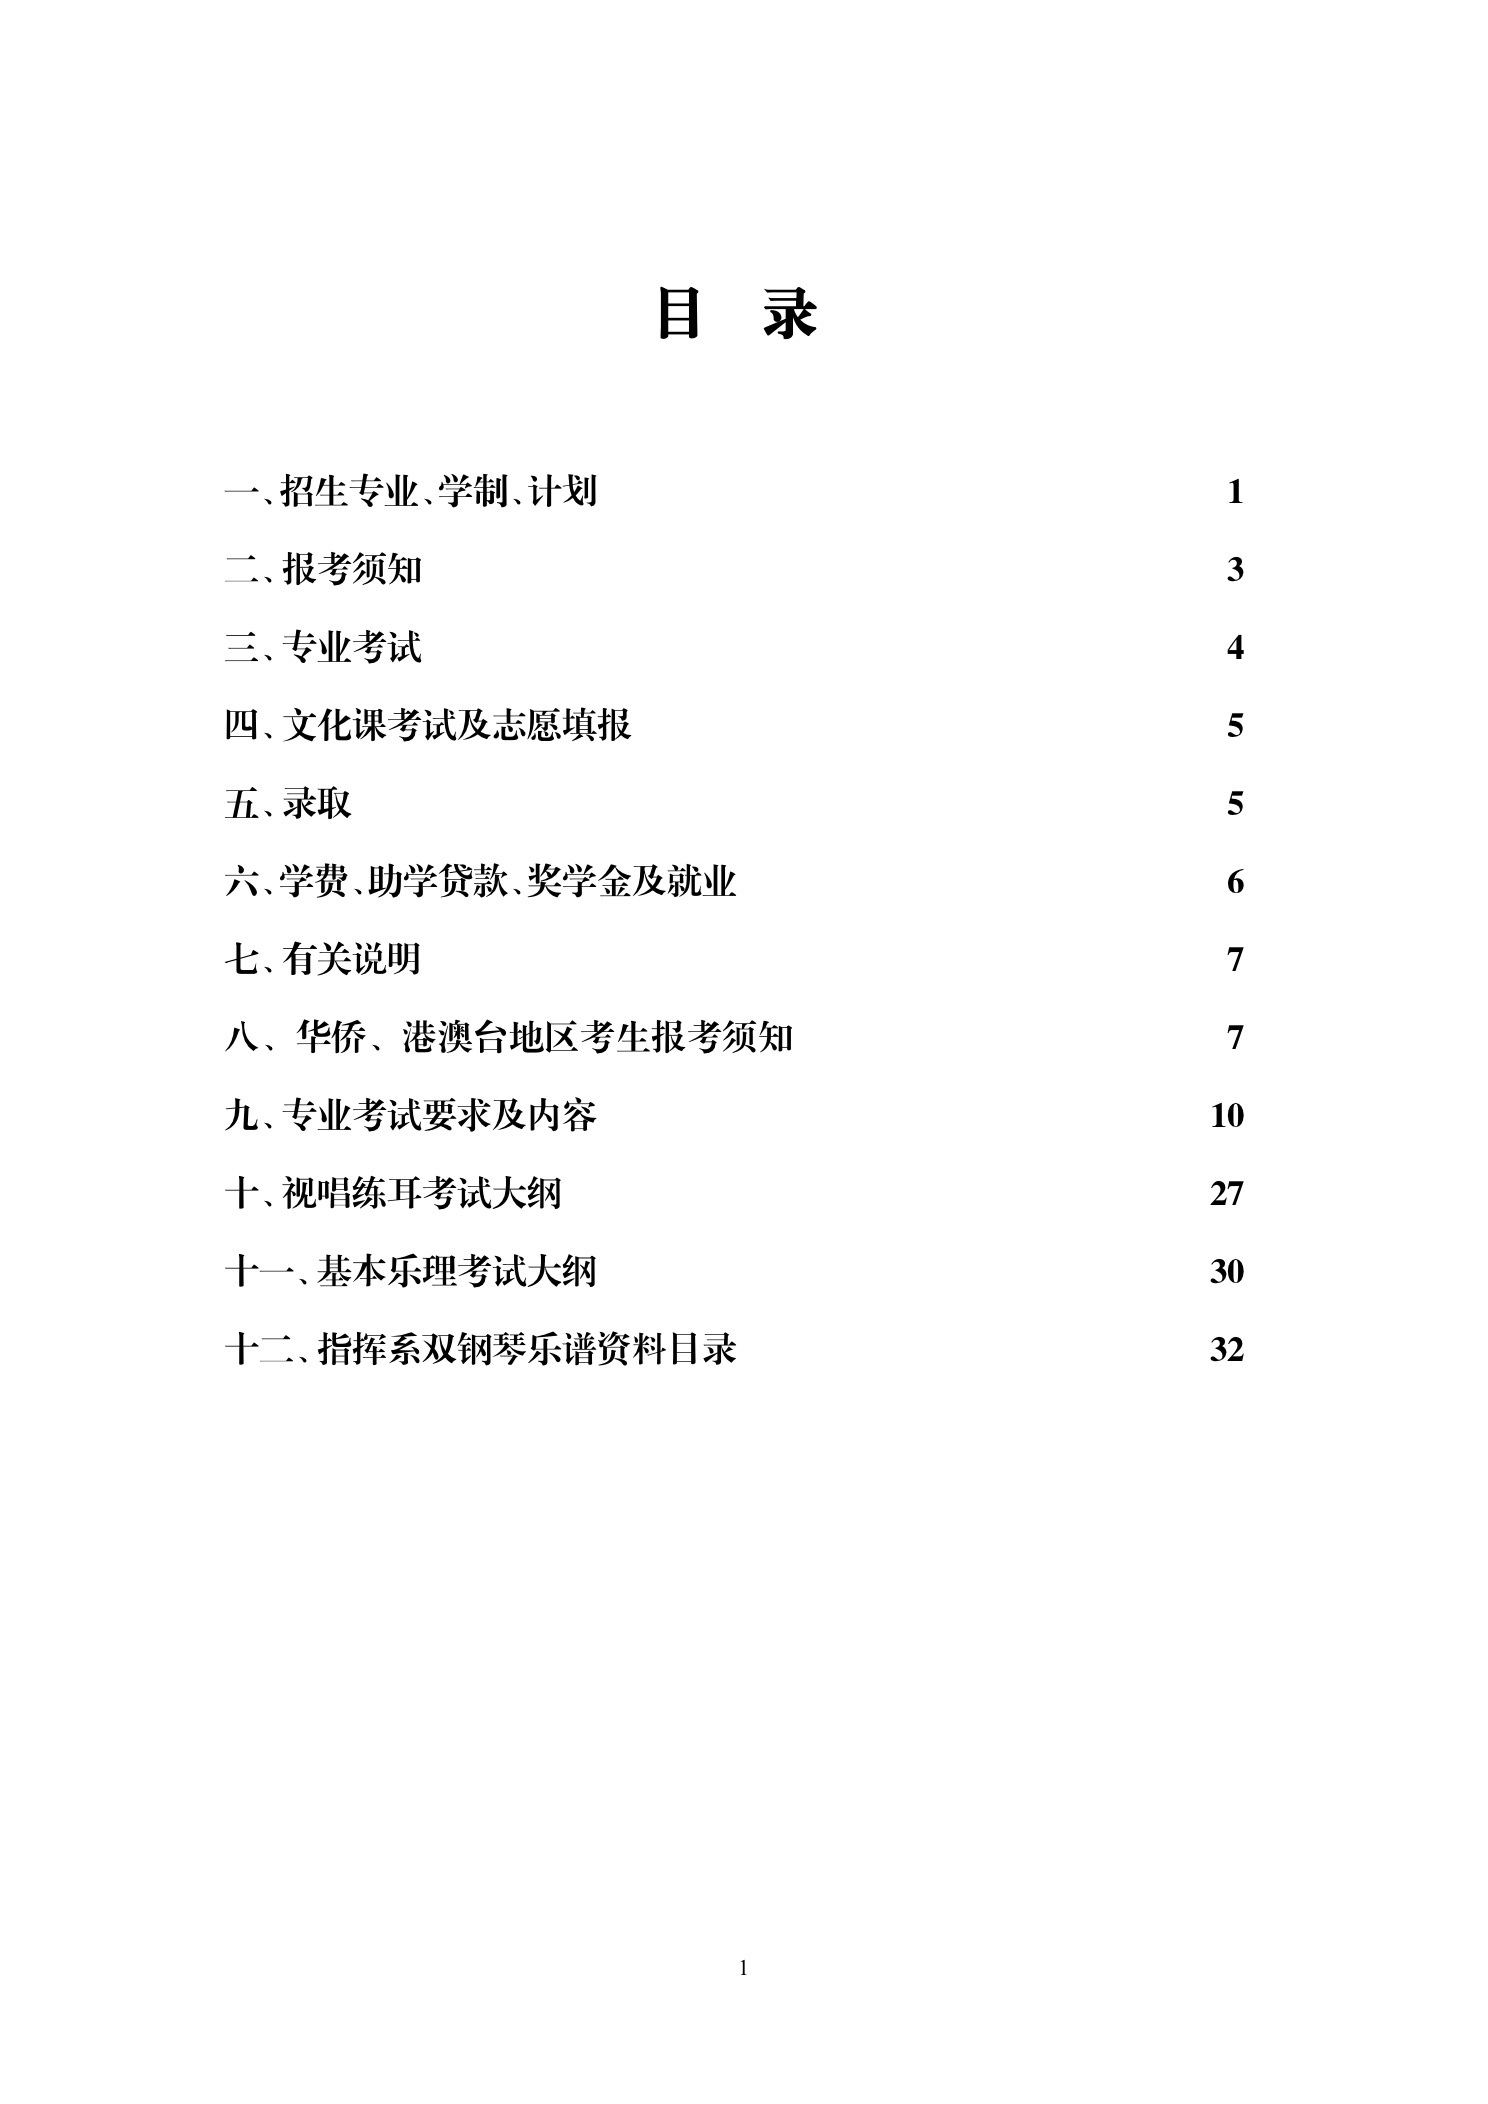 中国音乐学院本科招生简章（2018年）-page4.jpeg